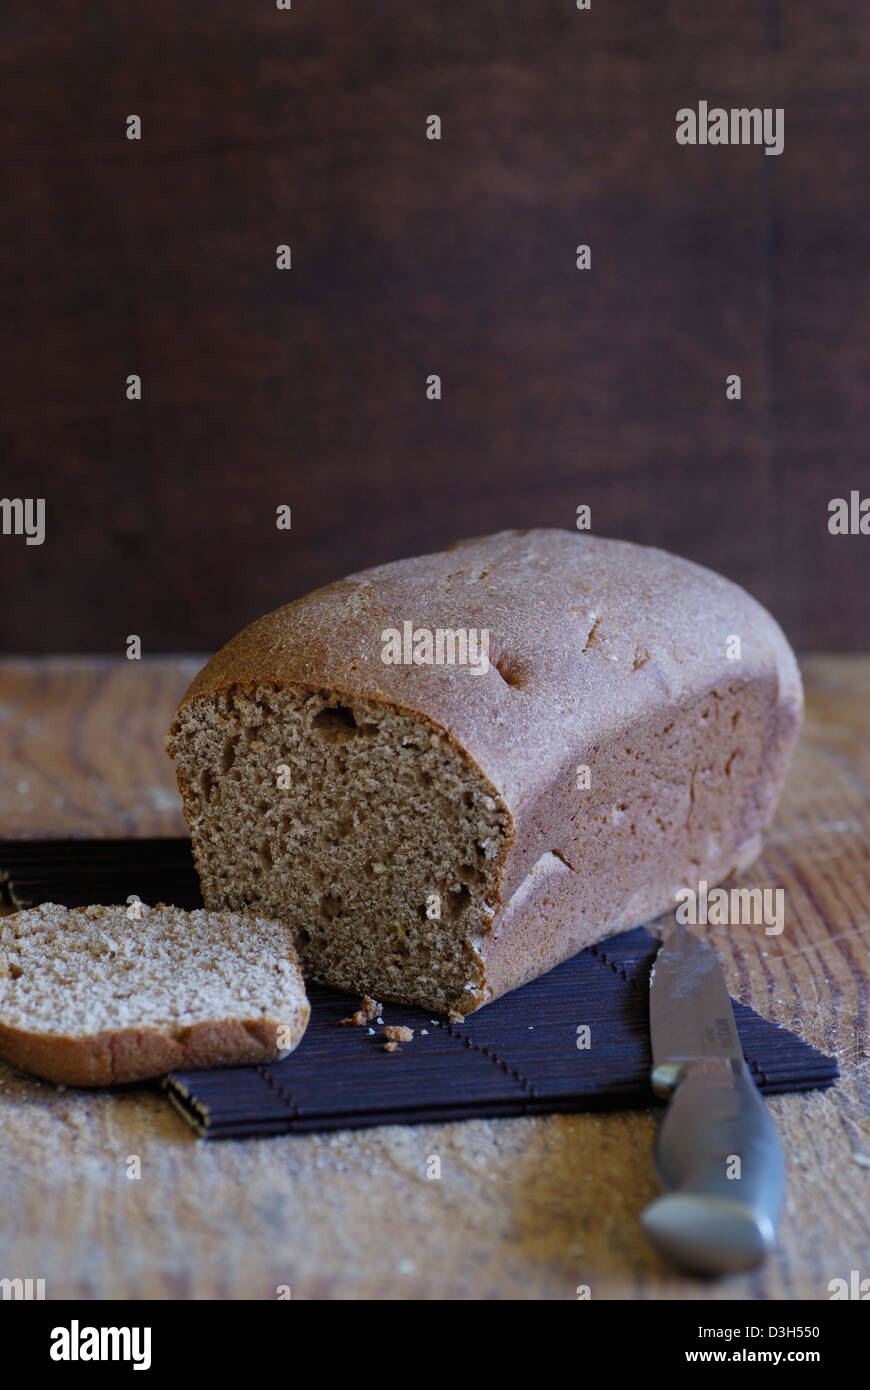 Artisan Brot, ganze Wheat Bread Loaf auf Holz Schneidebrett mit Messer, Schneiden des Brotes Stockfoto